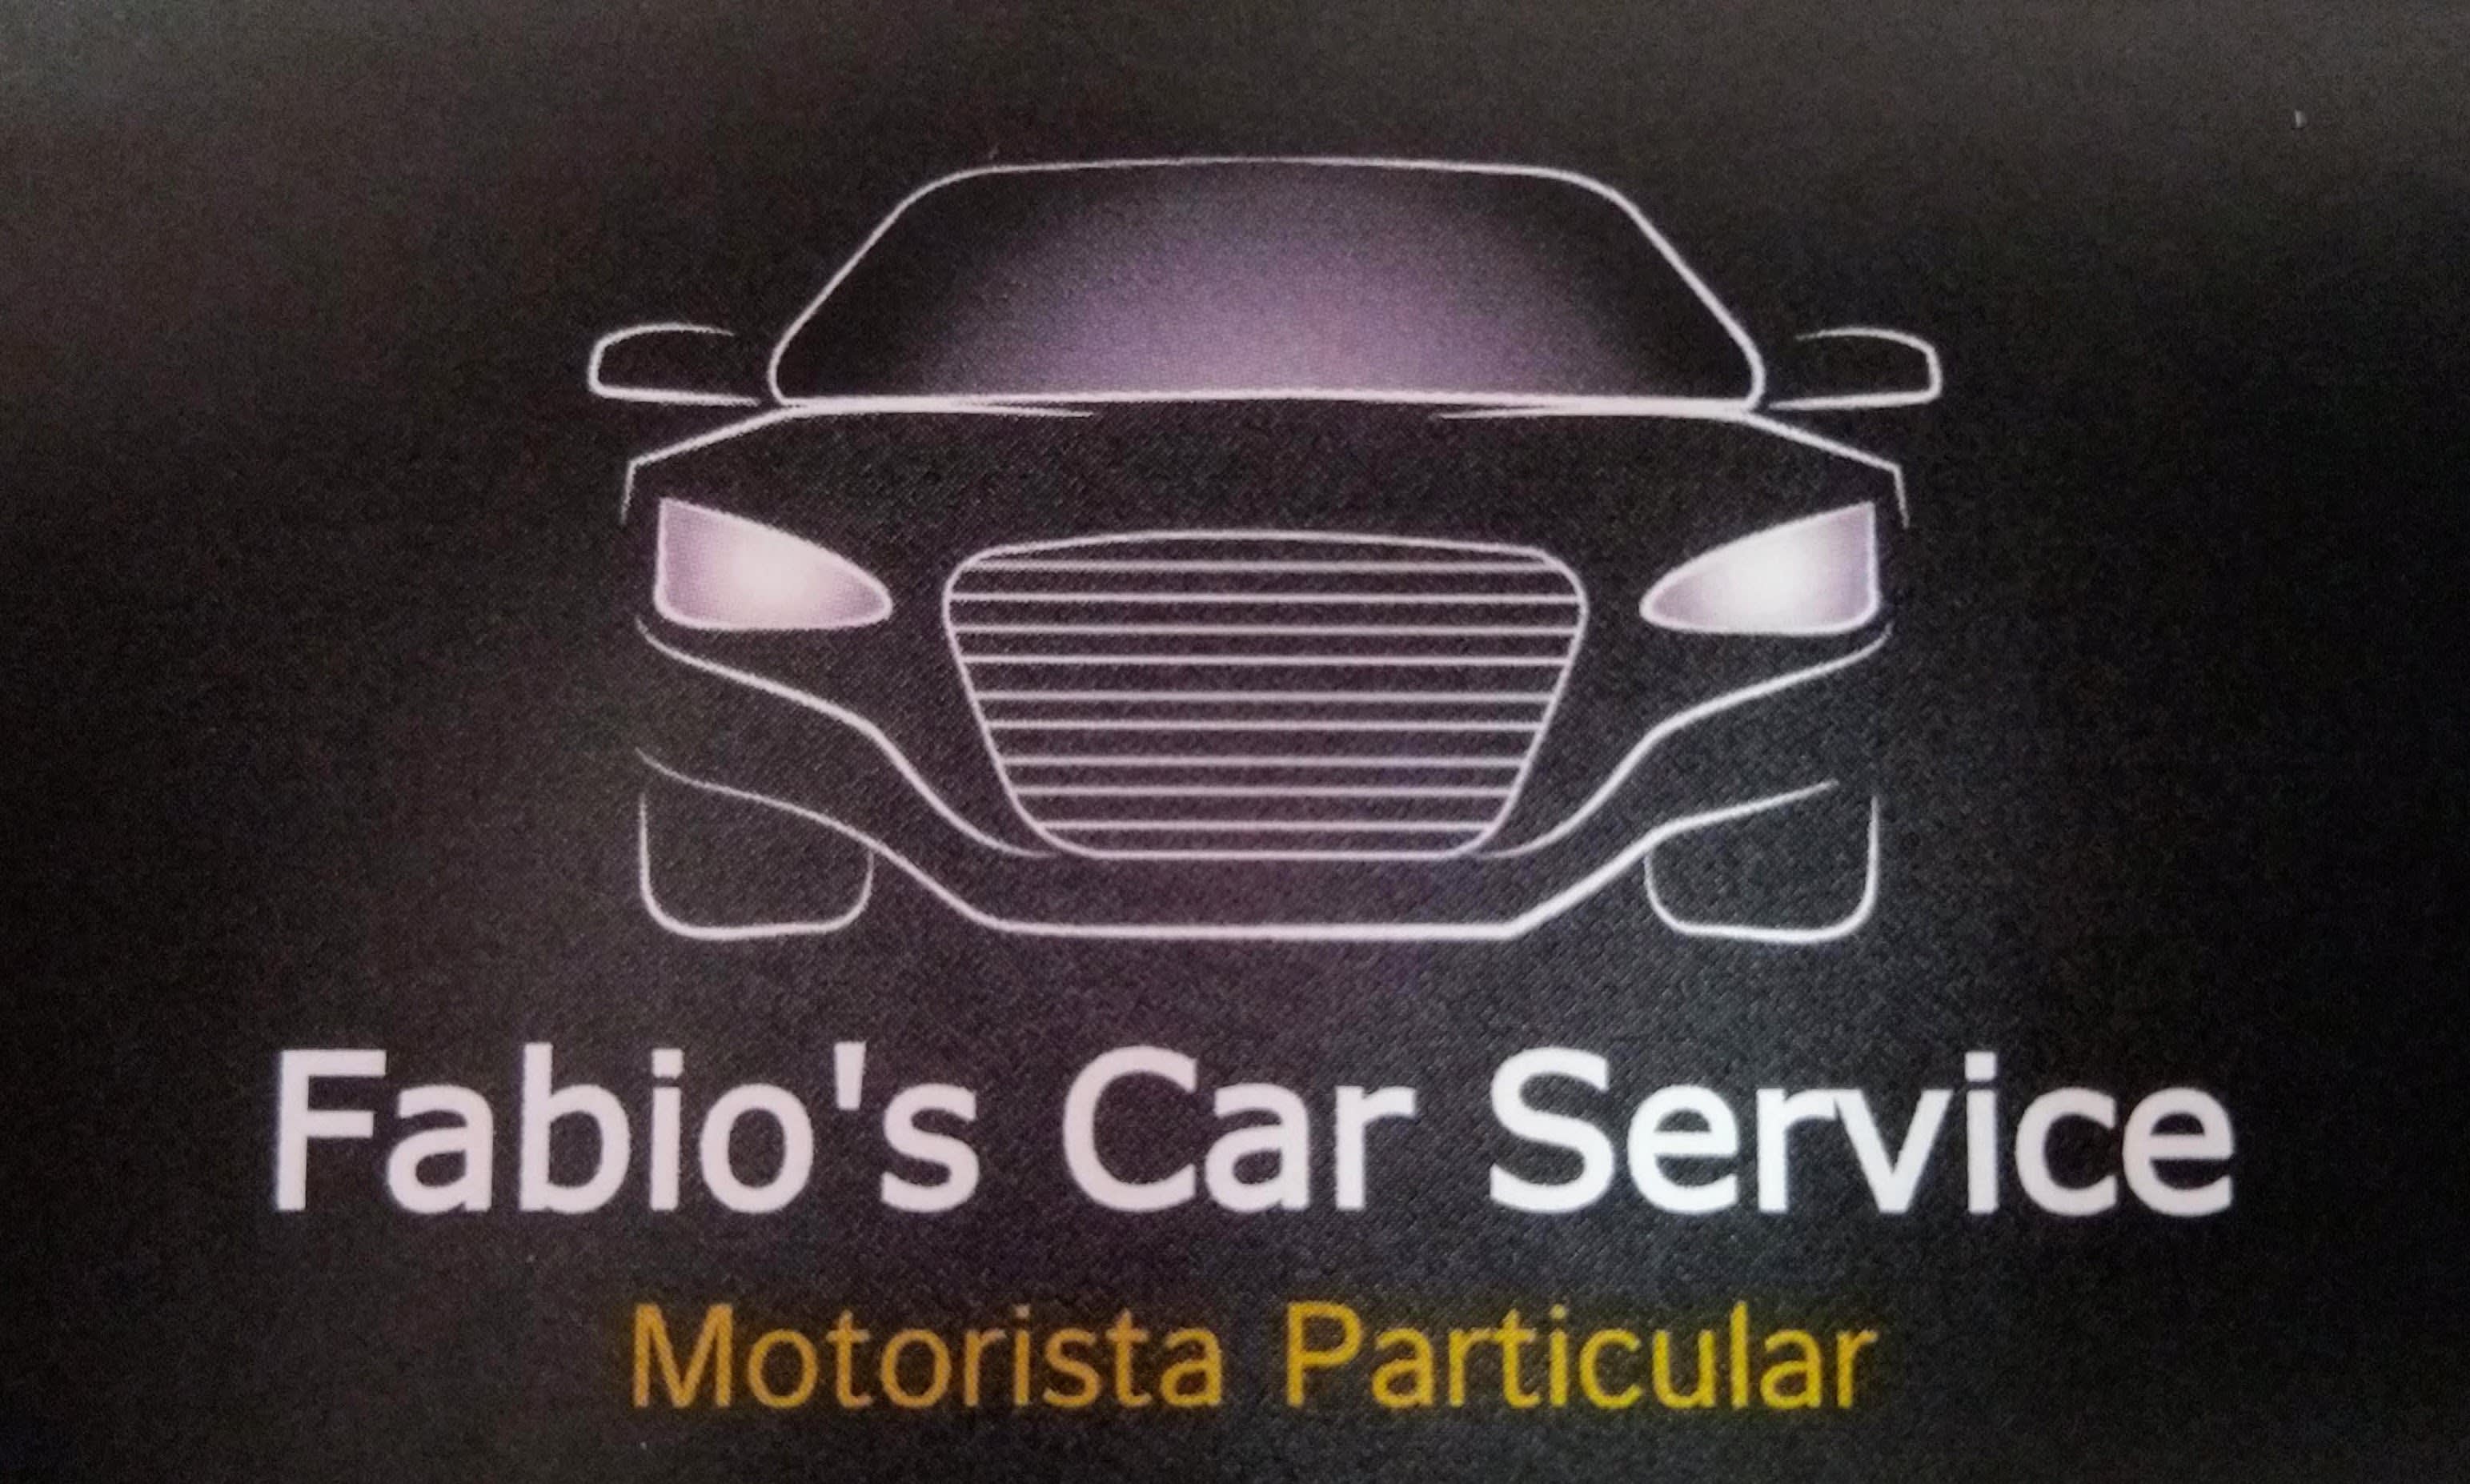 Fabio's Car Service